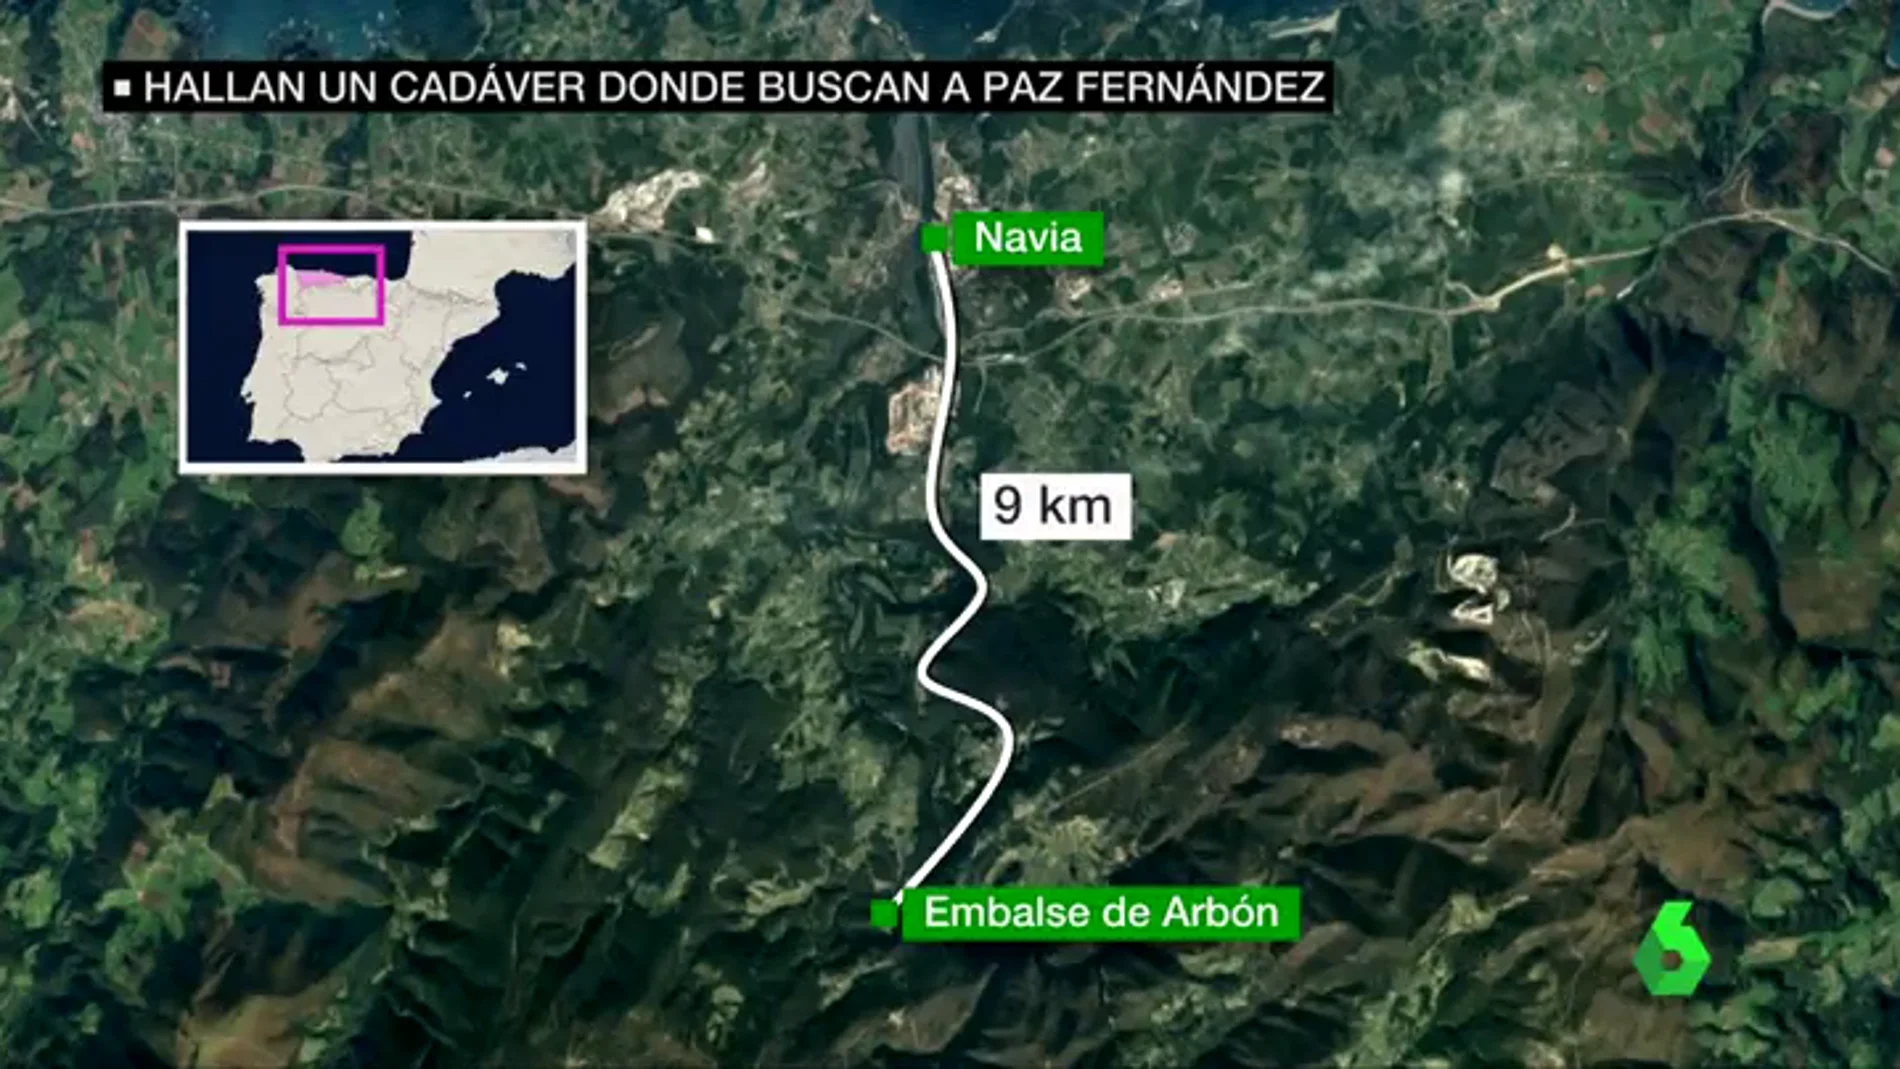 Hallan el cuerpo de una mujer en el embalse de Arbón, en Navia, la zona donde se buscaba a una de las desaparecidas de Asturias